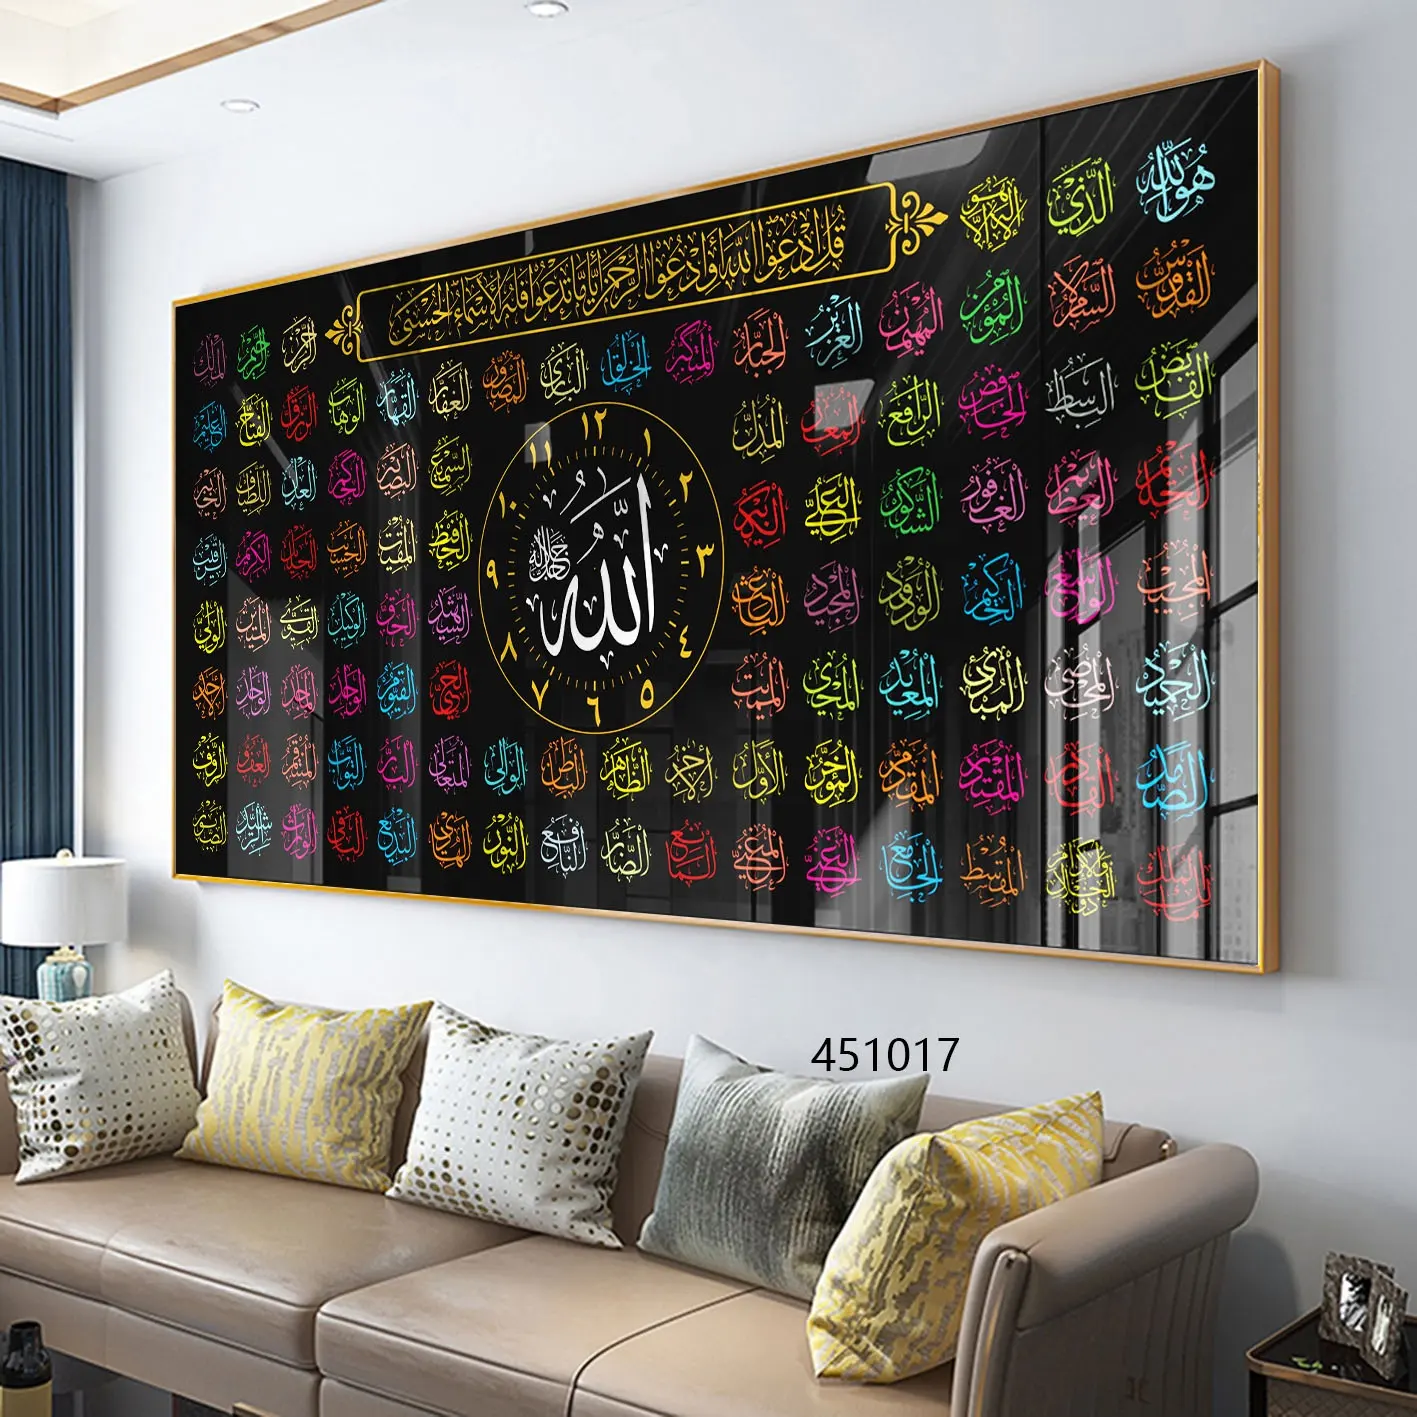 ของตกแต่งบ้านมุสลิมอิสลามศิลปะอิสลามอักษรอาหรับพิมพ์ตัวอักษรอิสลามคริสตัลพอร์ซเลนภาพวาดผนังศิลปะ